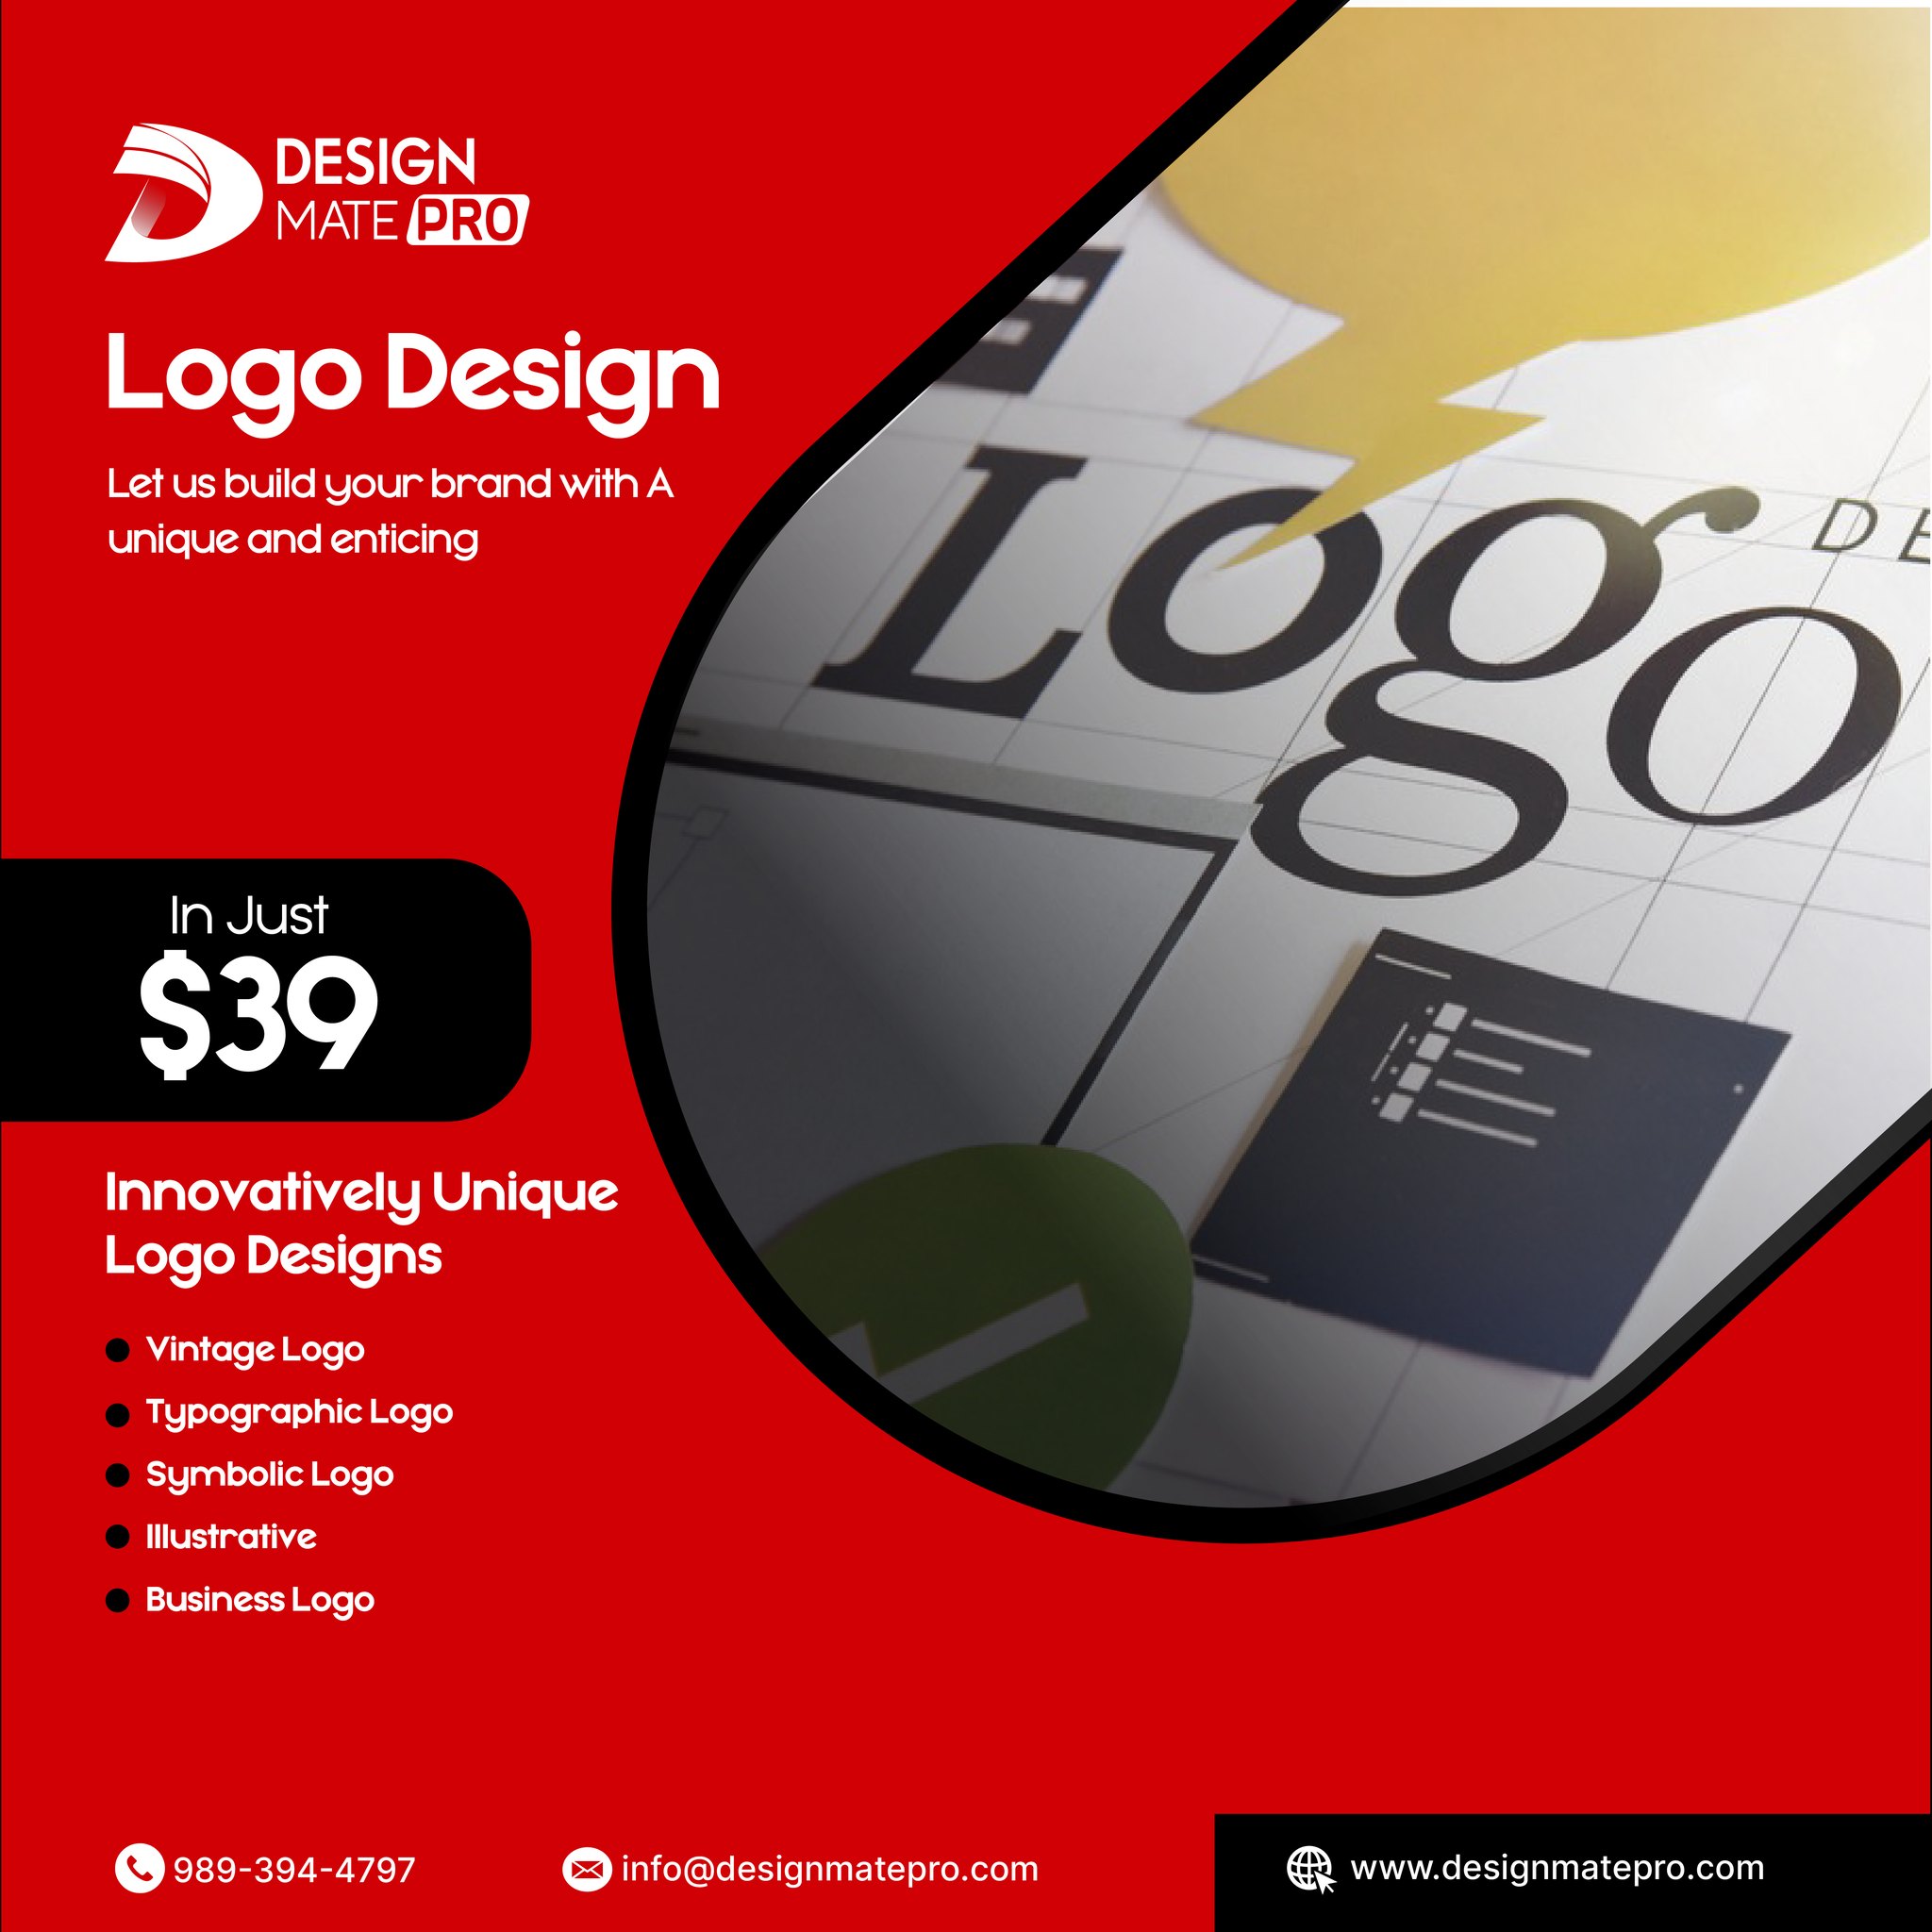 Logo Design Services in Clifton, NJ